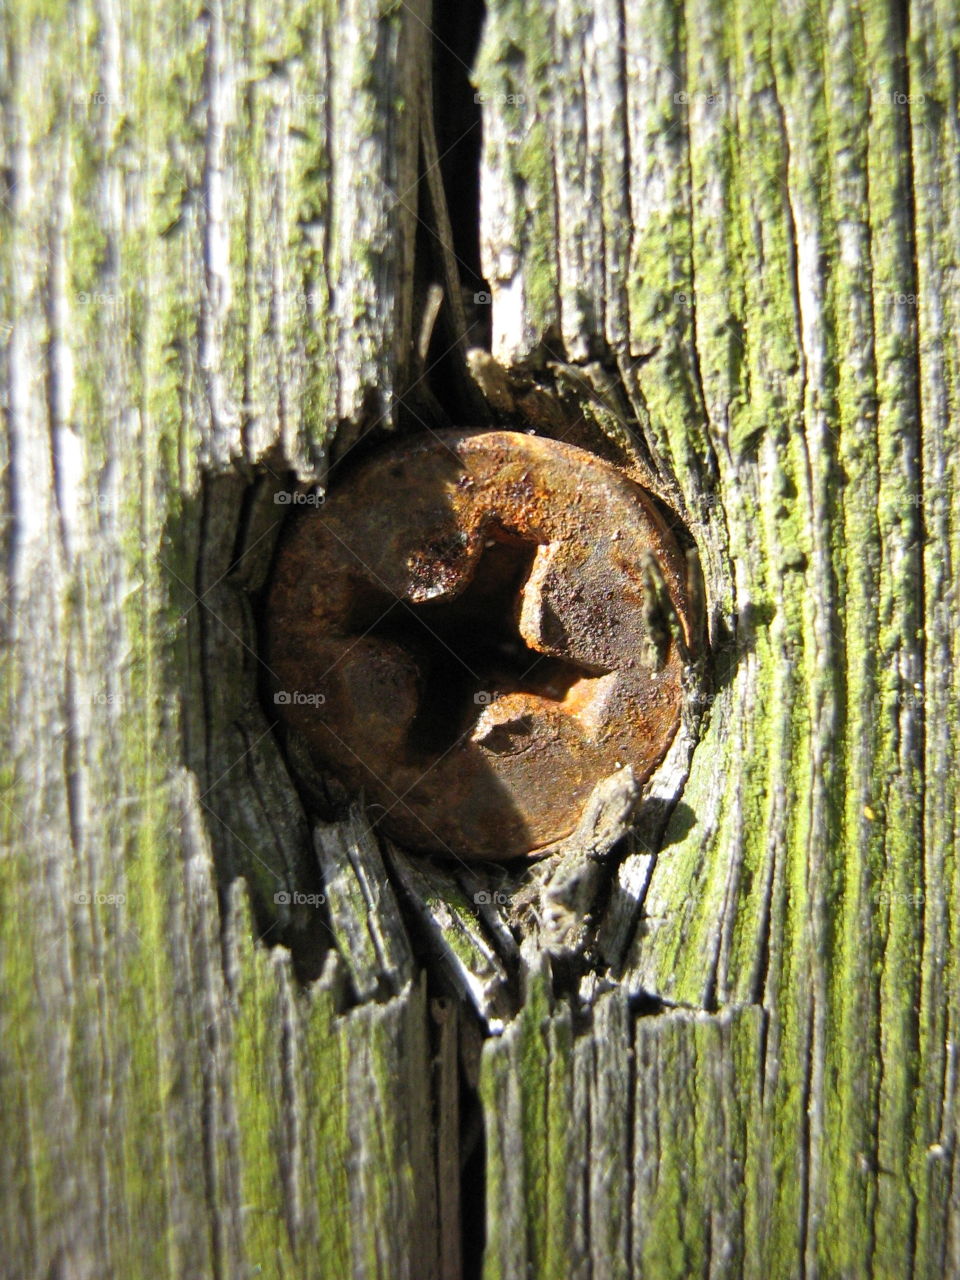 Rusty Screw in the wood 